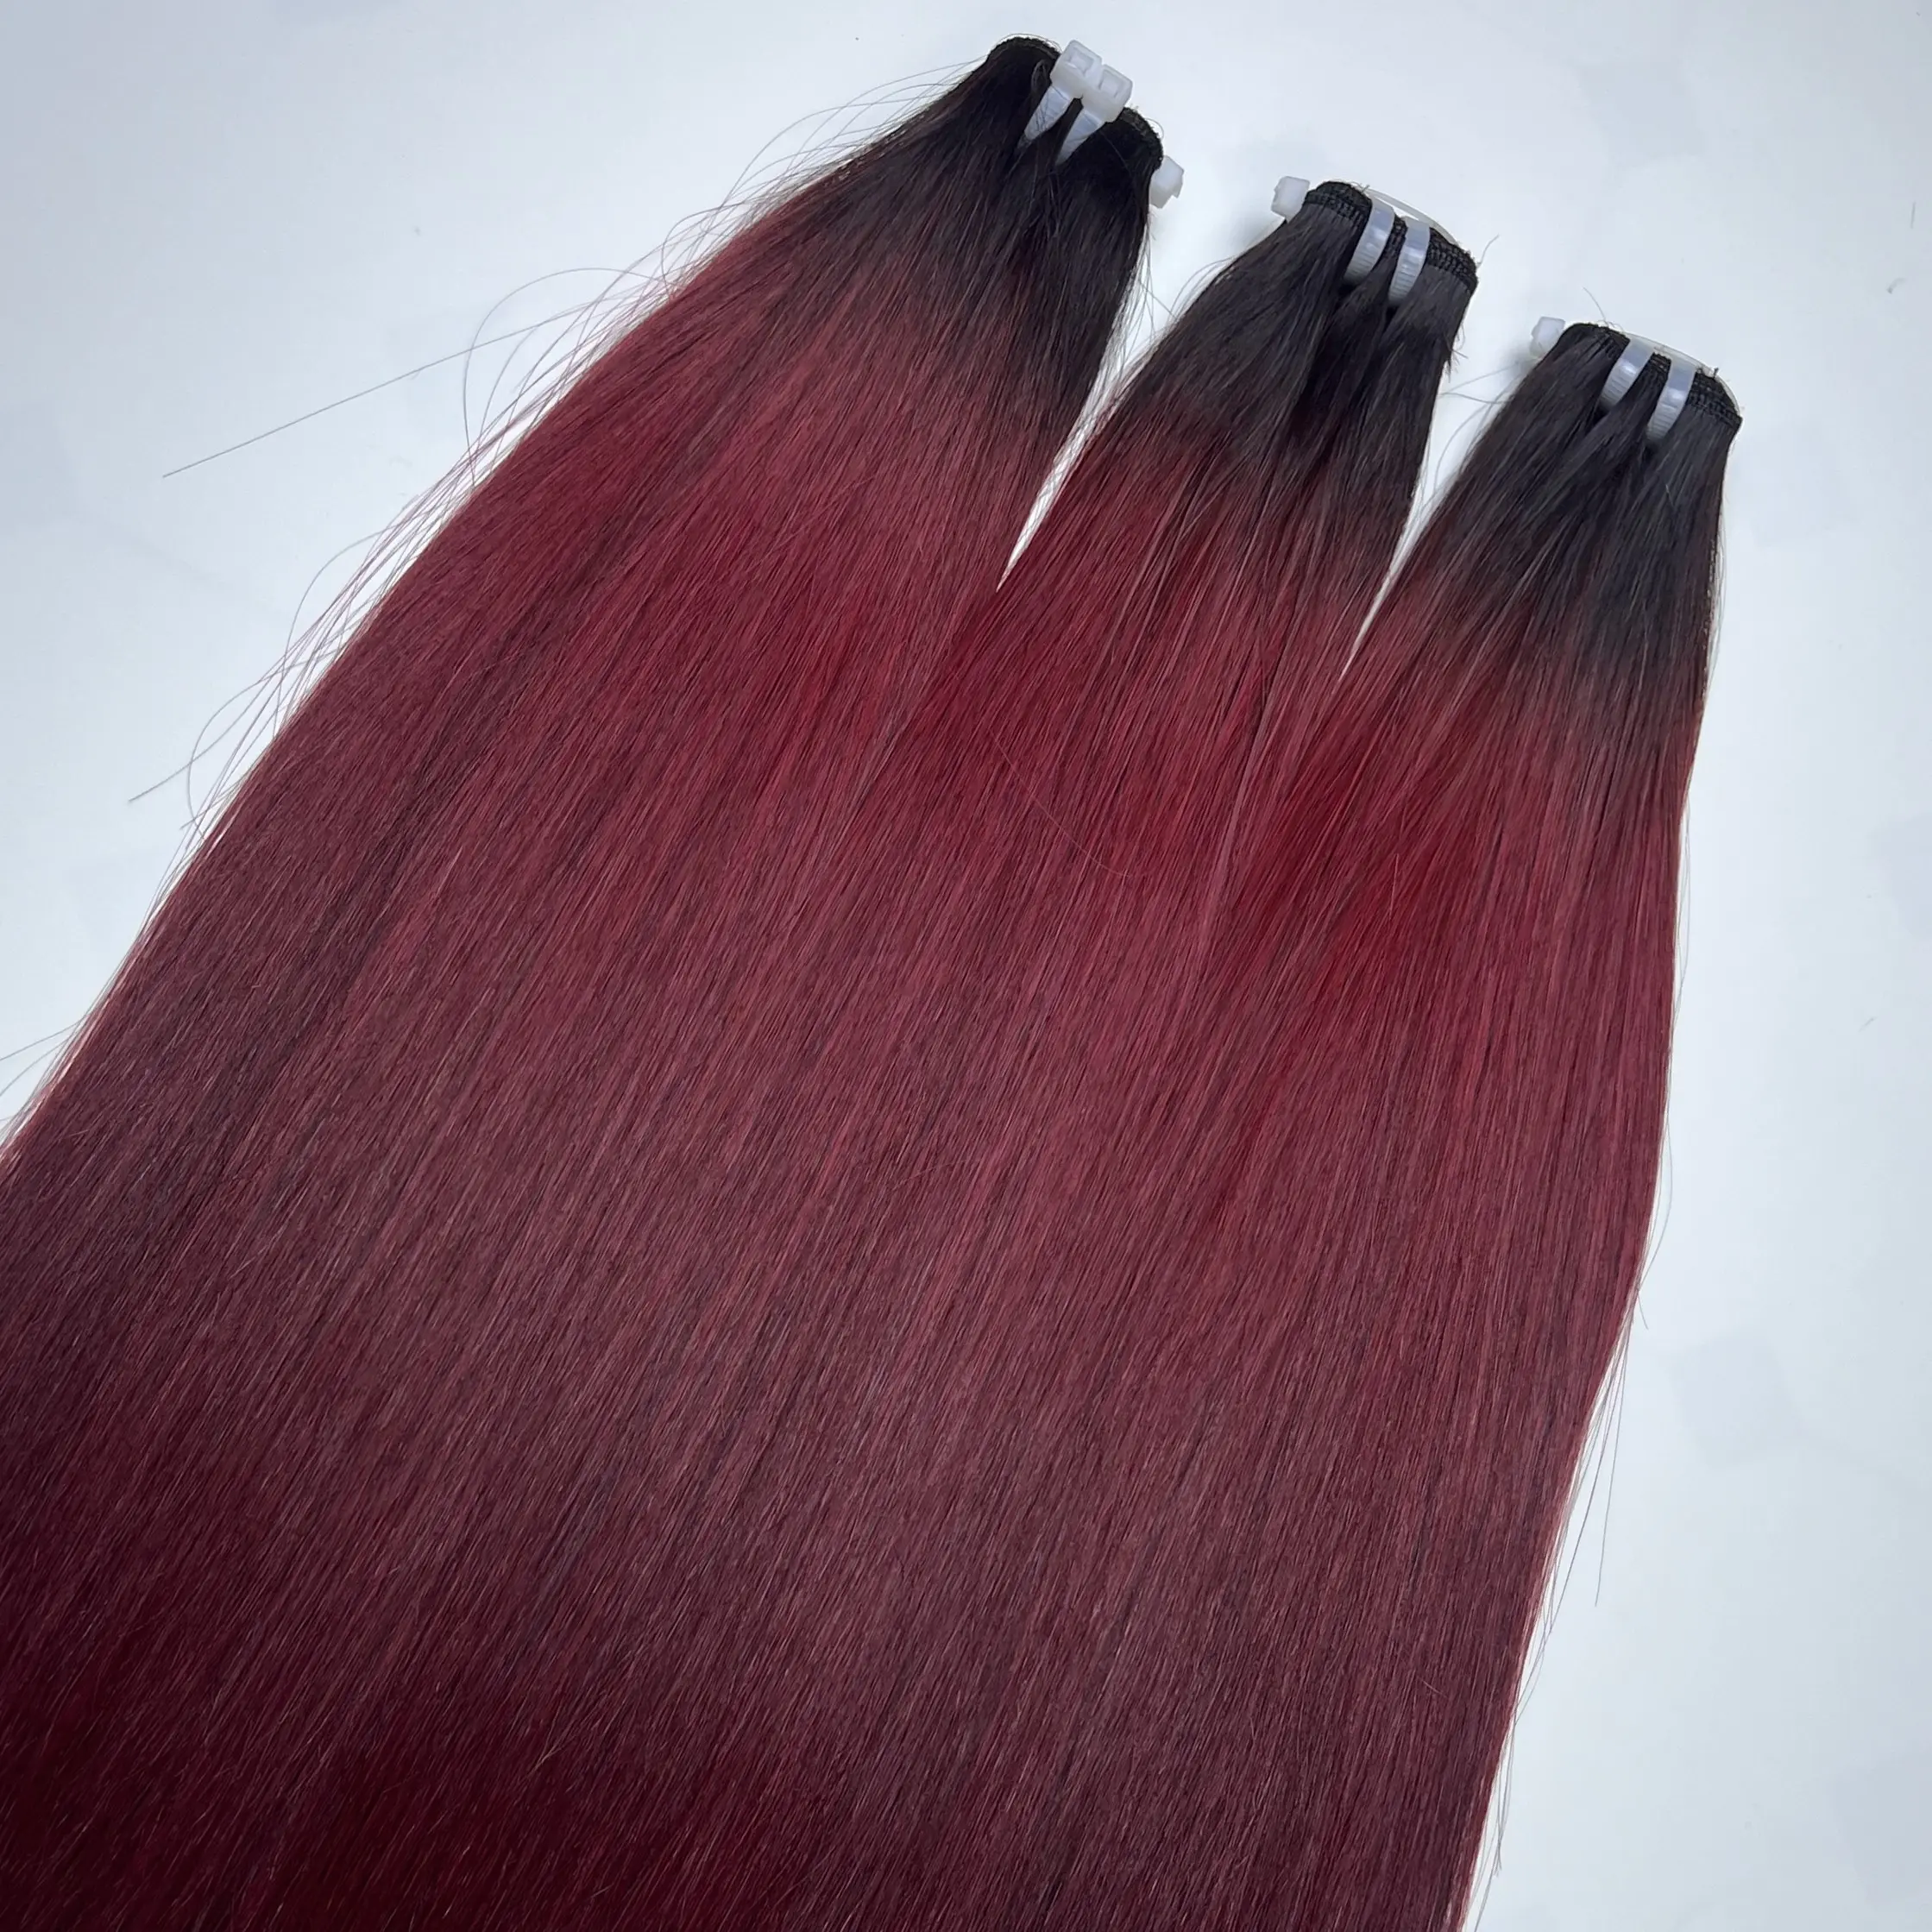 Paquetes de cabello humano recto de hueso de alta calidad Fábrica al por mayor Extensión de cabello humano Remy Color rojo natural Tamaño superior 30 pulgadas 10A